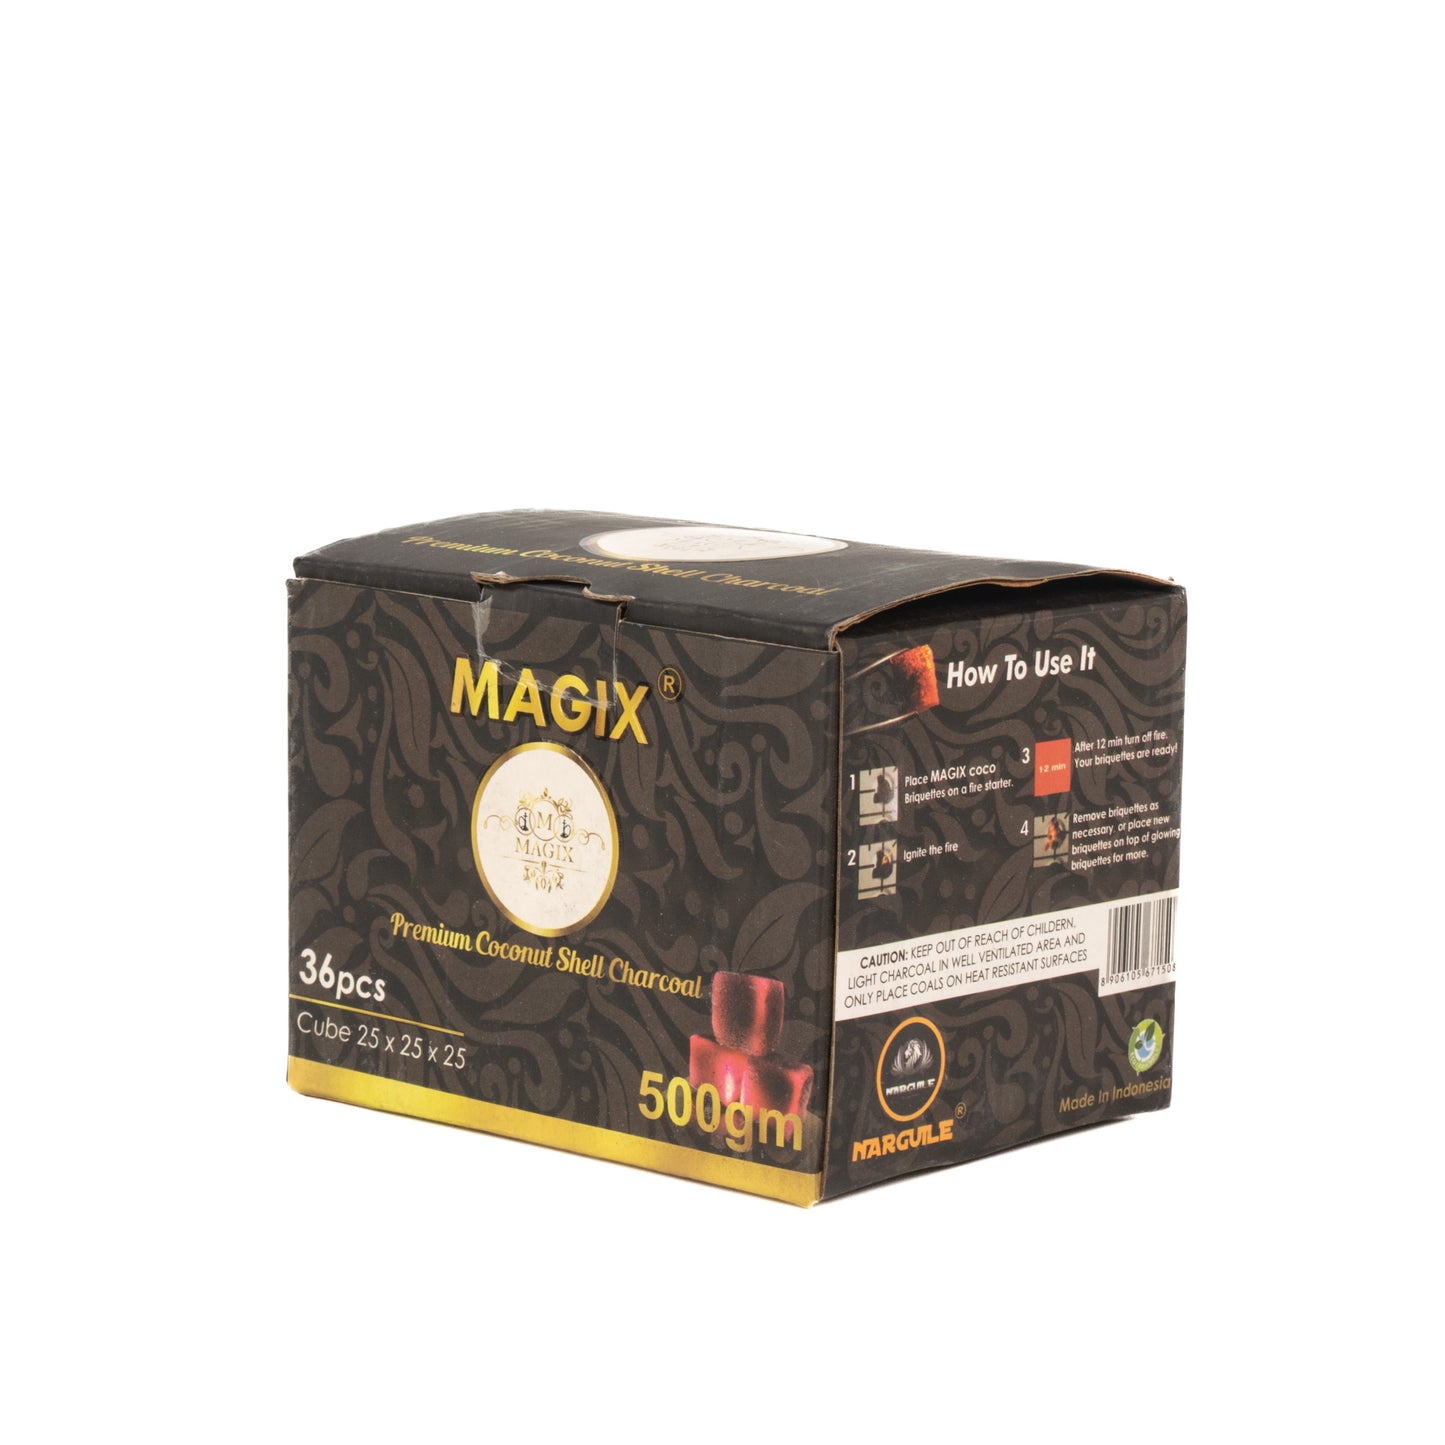 Magix Coconut Coal for Hookah 500g Pack - 36pcs